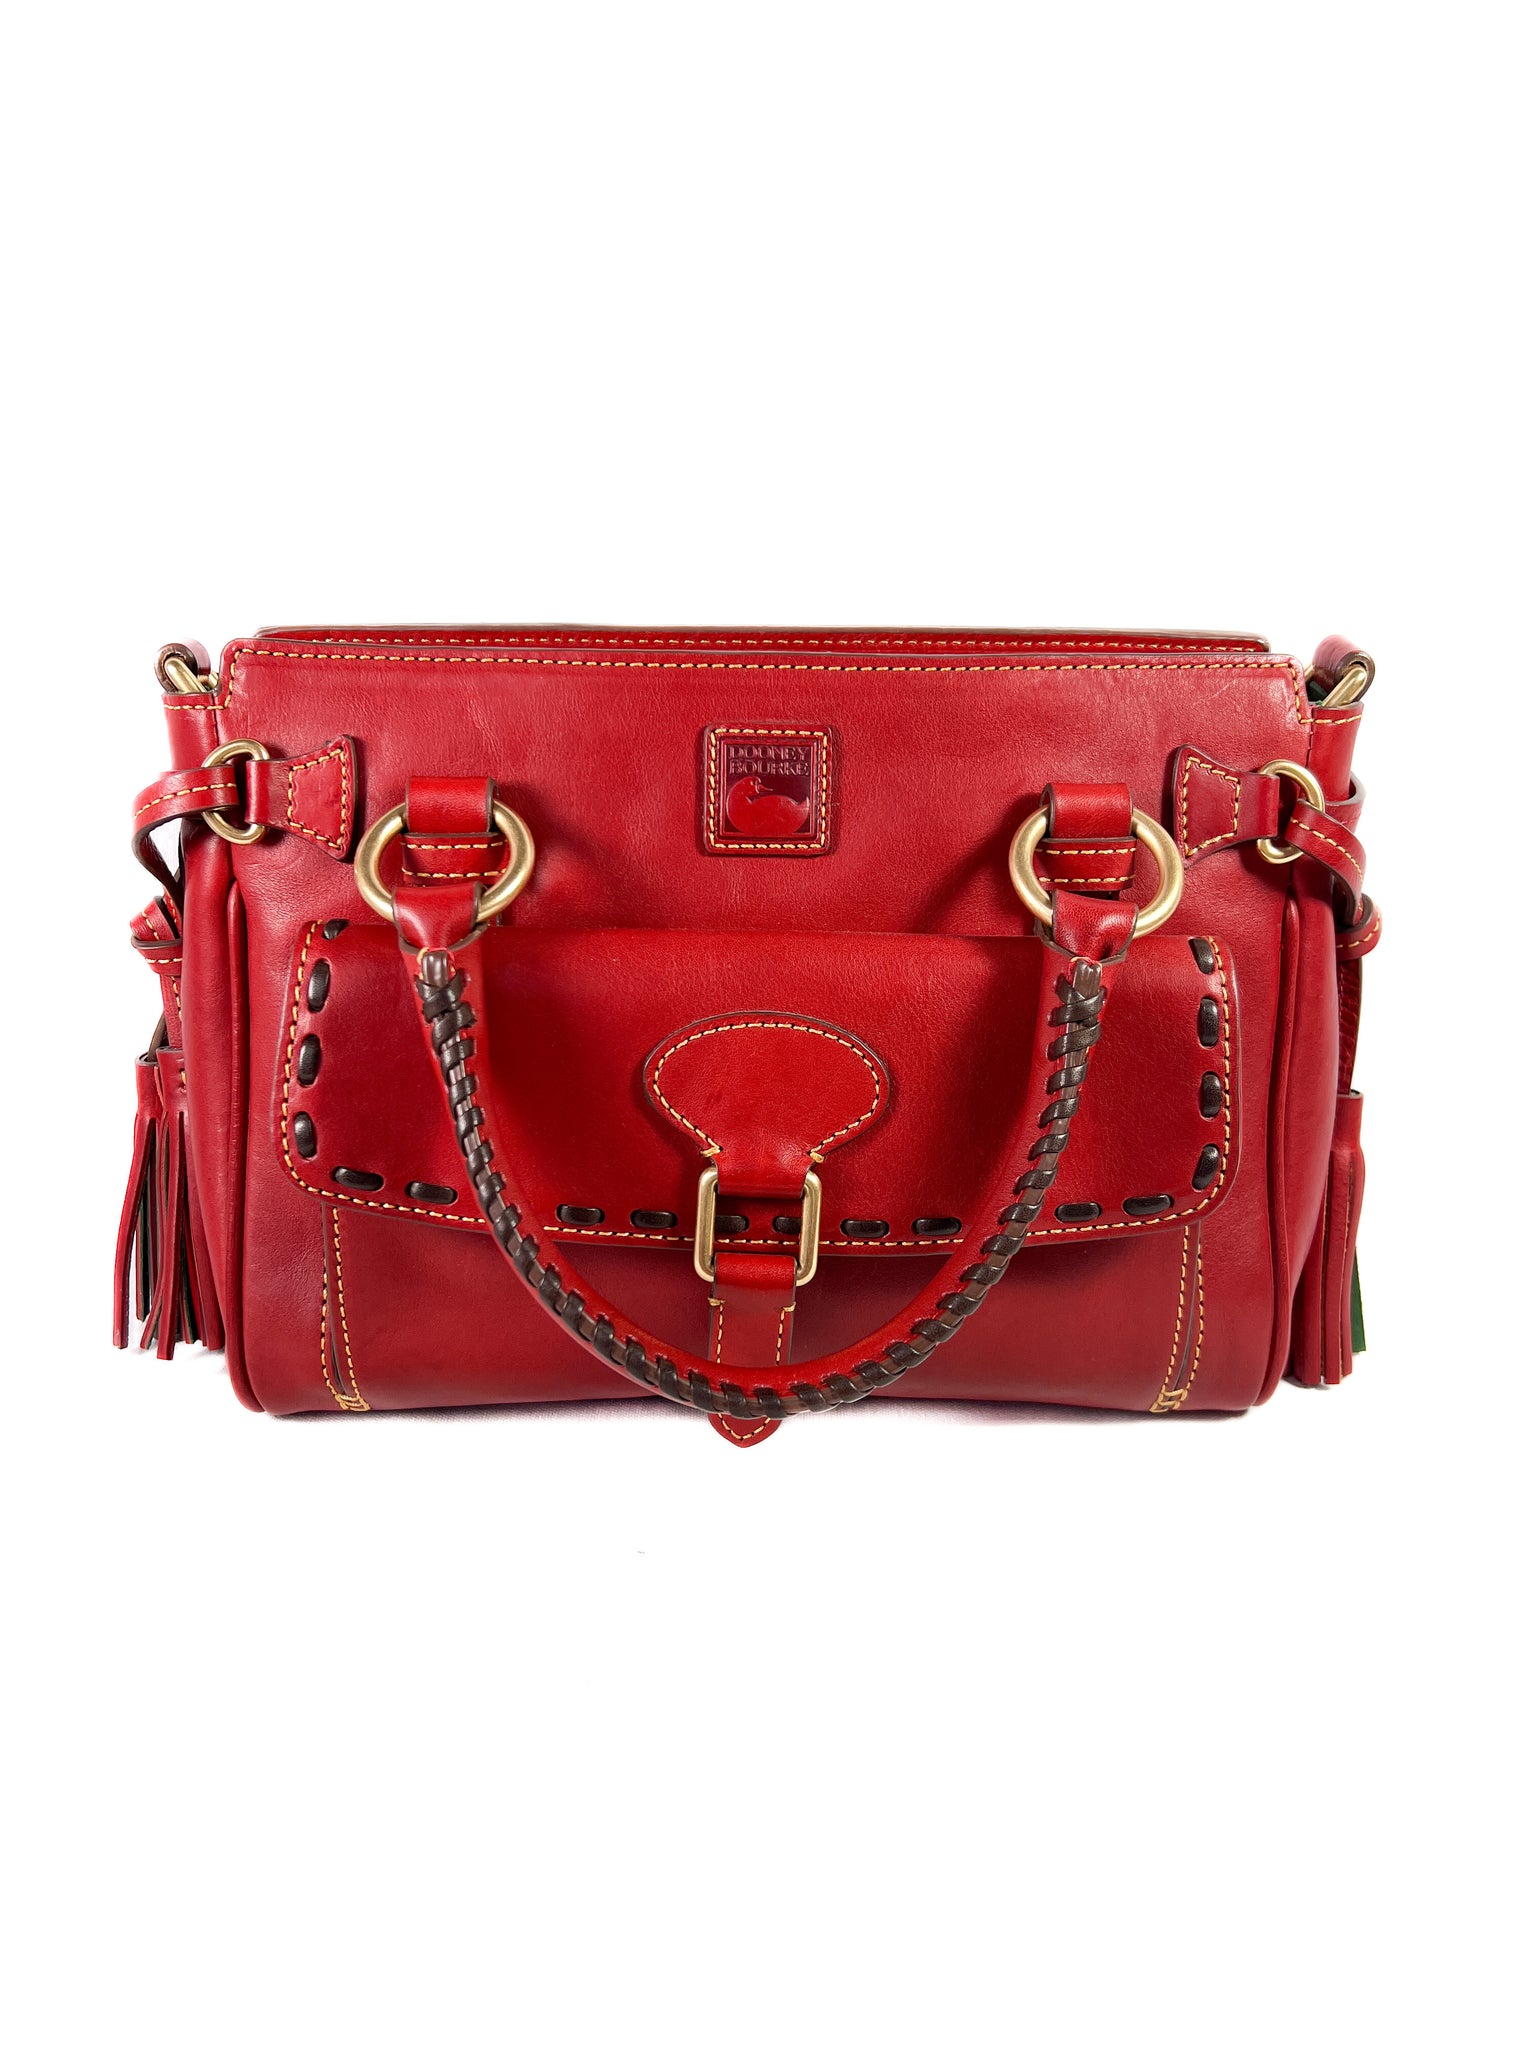 Dooney & Bourke Red Bucket Bags | Mercari